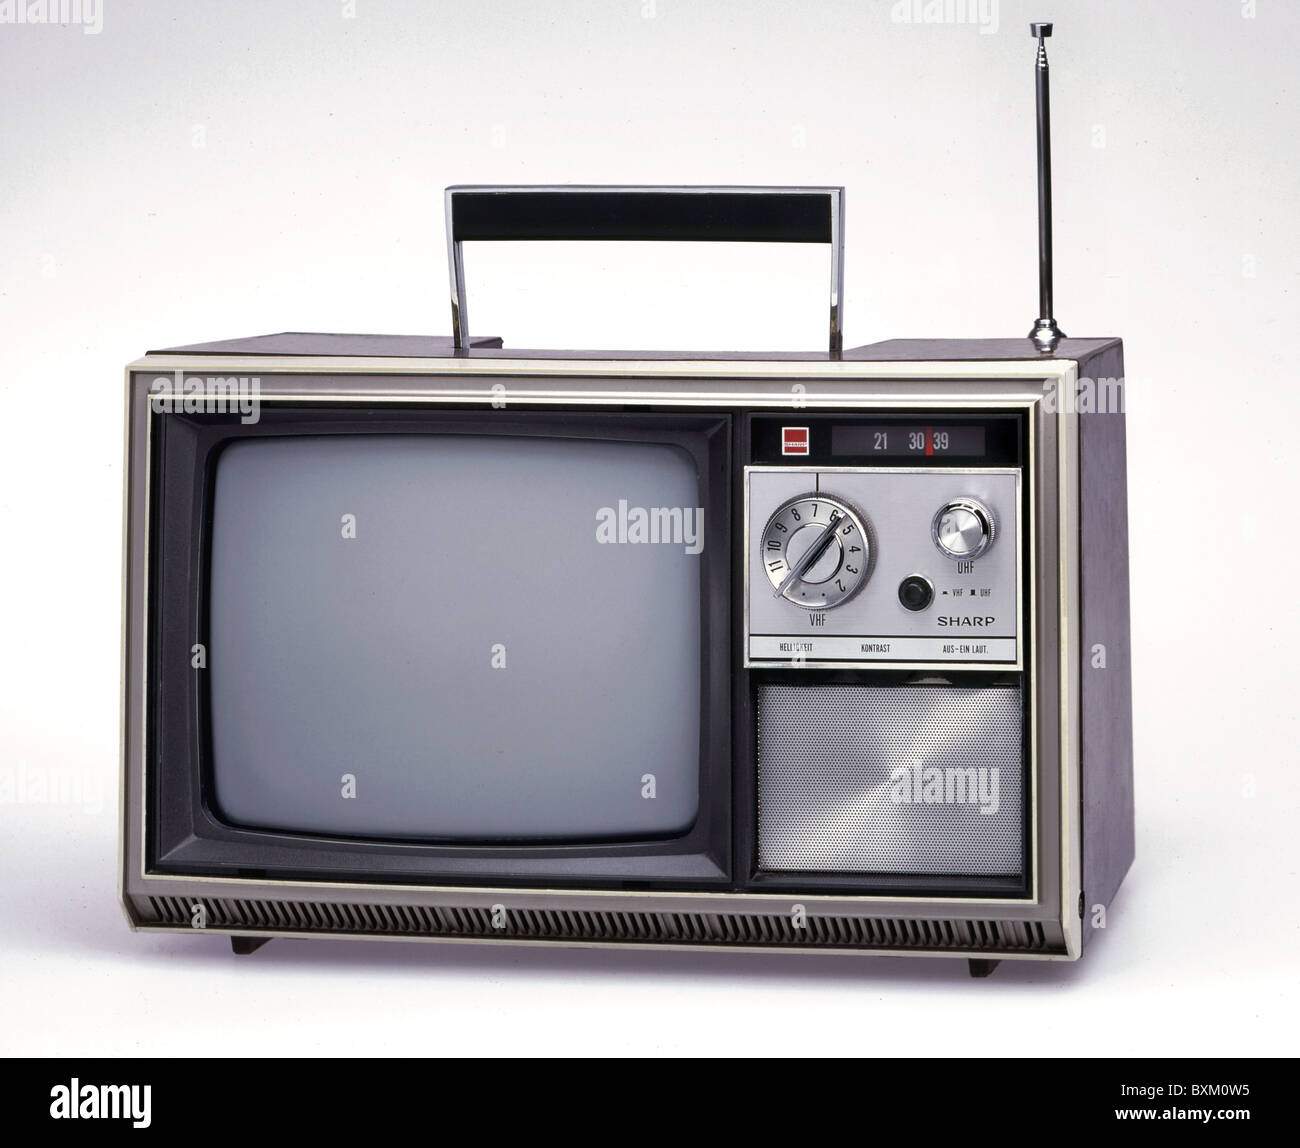 テレビ/映像機器 テレビ television / broadcast, TV sets, Sharp TV set, Japan, circa 1968 